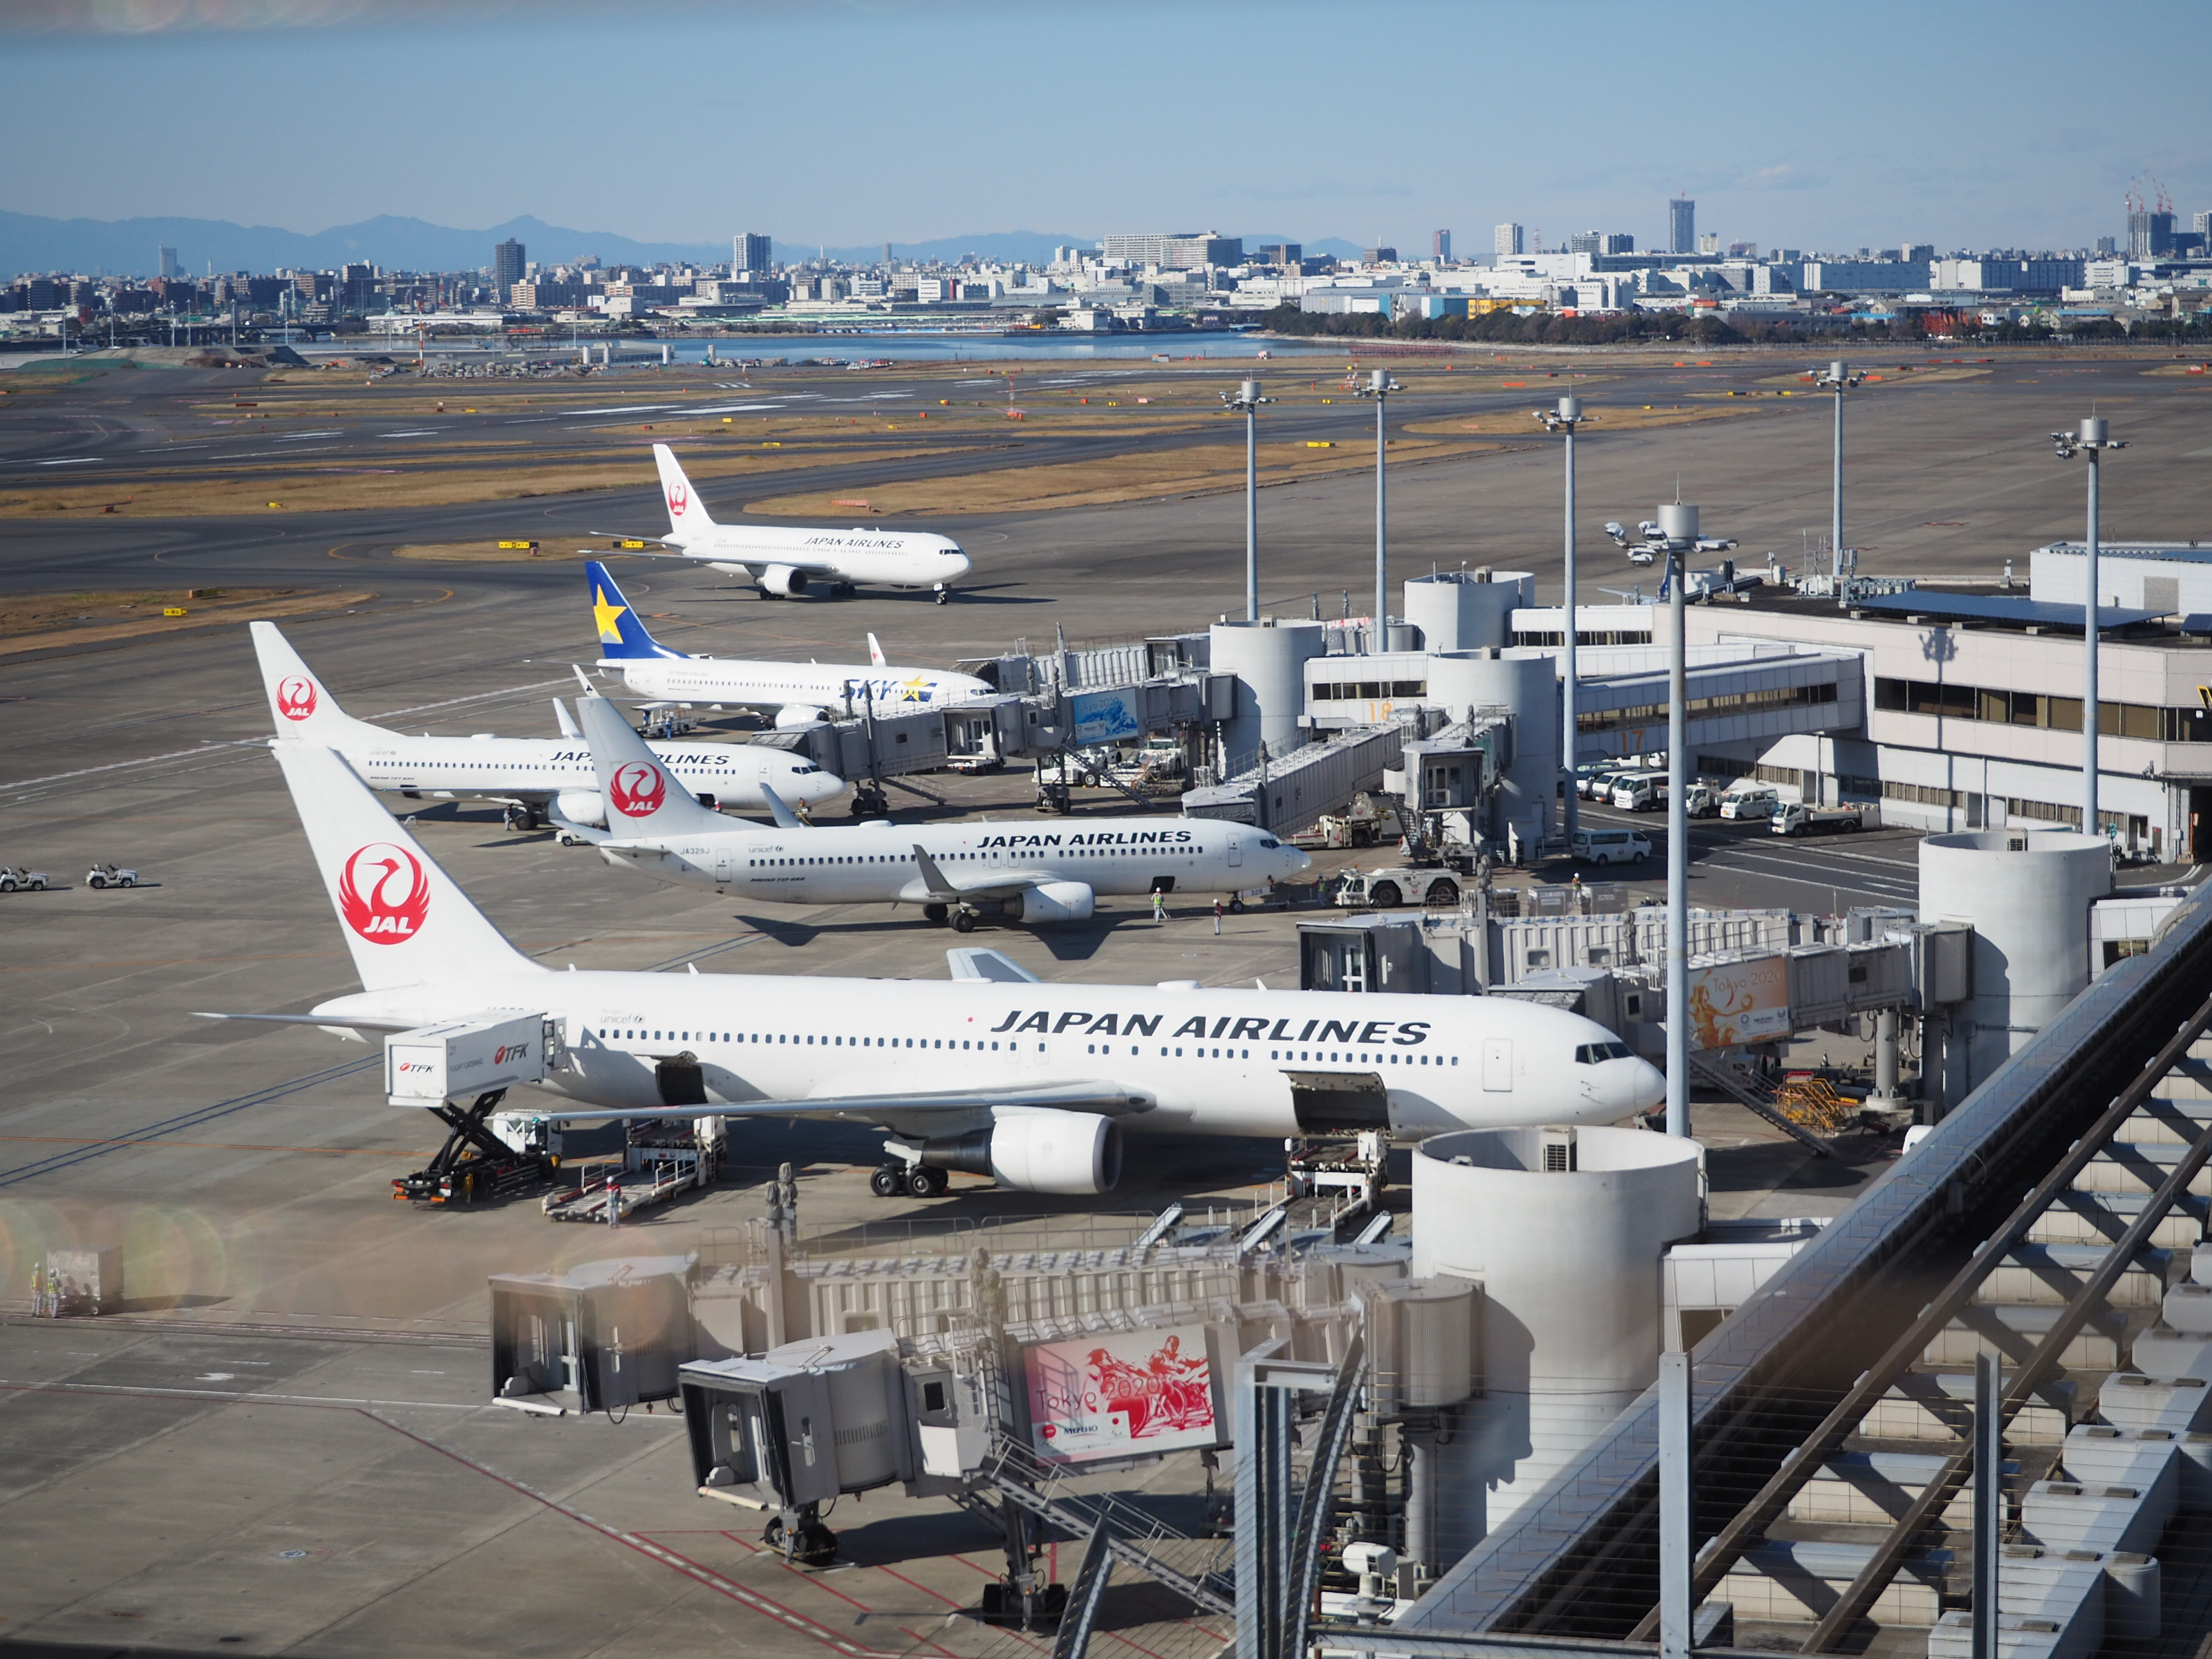 ターミナル別 羽田空港のラウンジ10選 特徴や利用条件まとめ ラウンジ利用のタイミングも